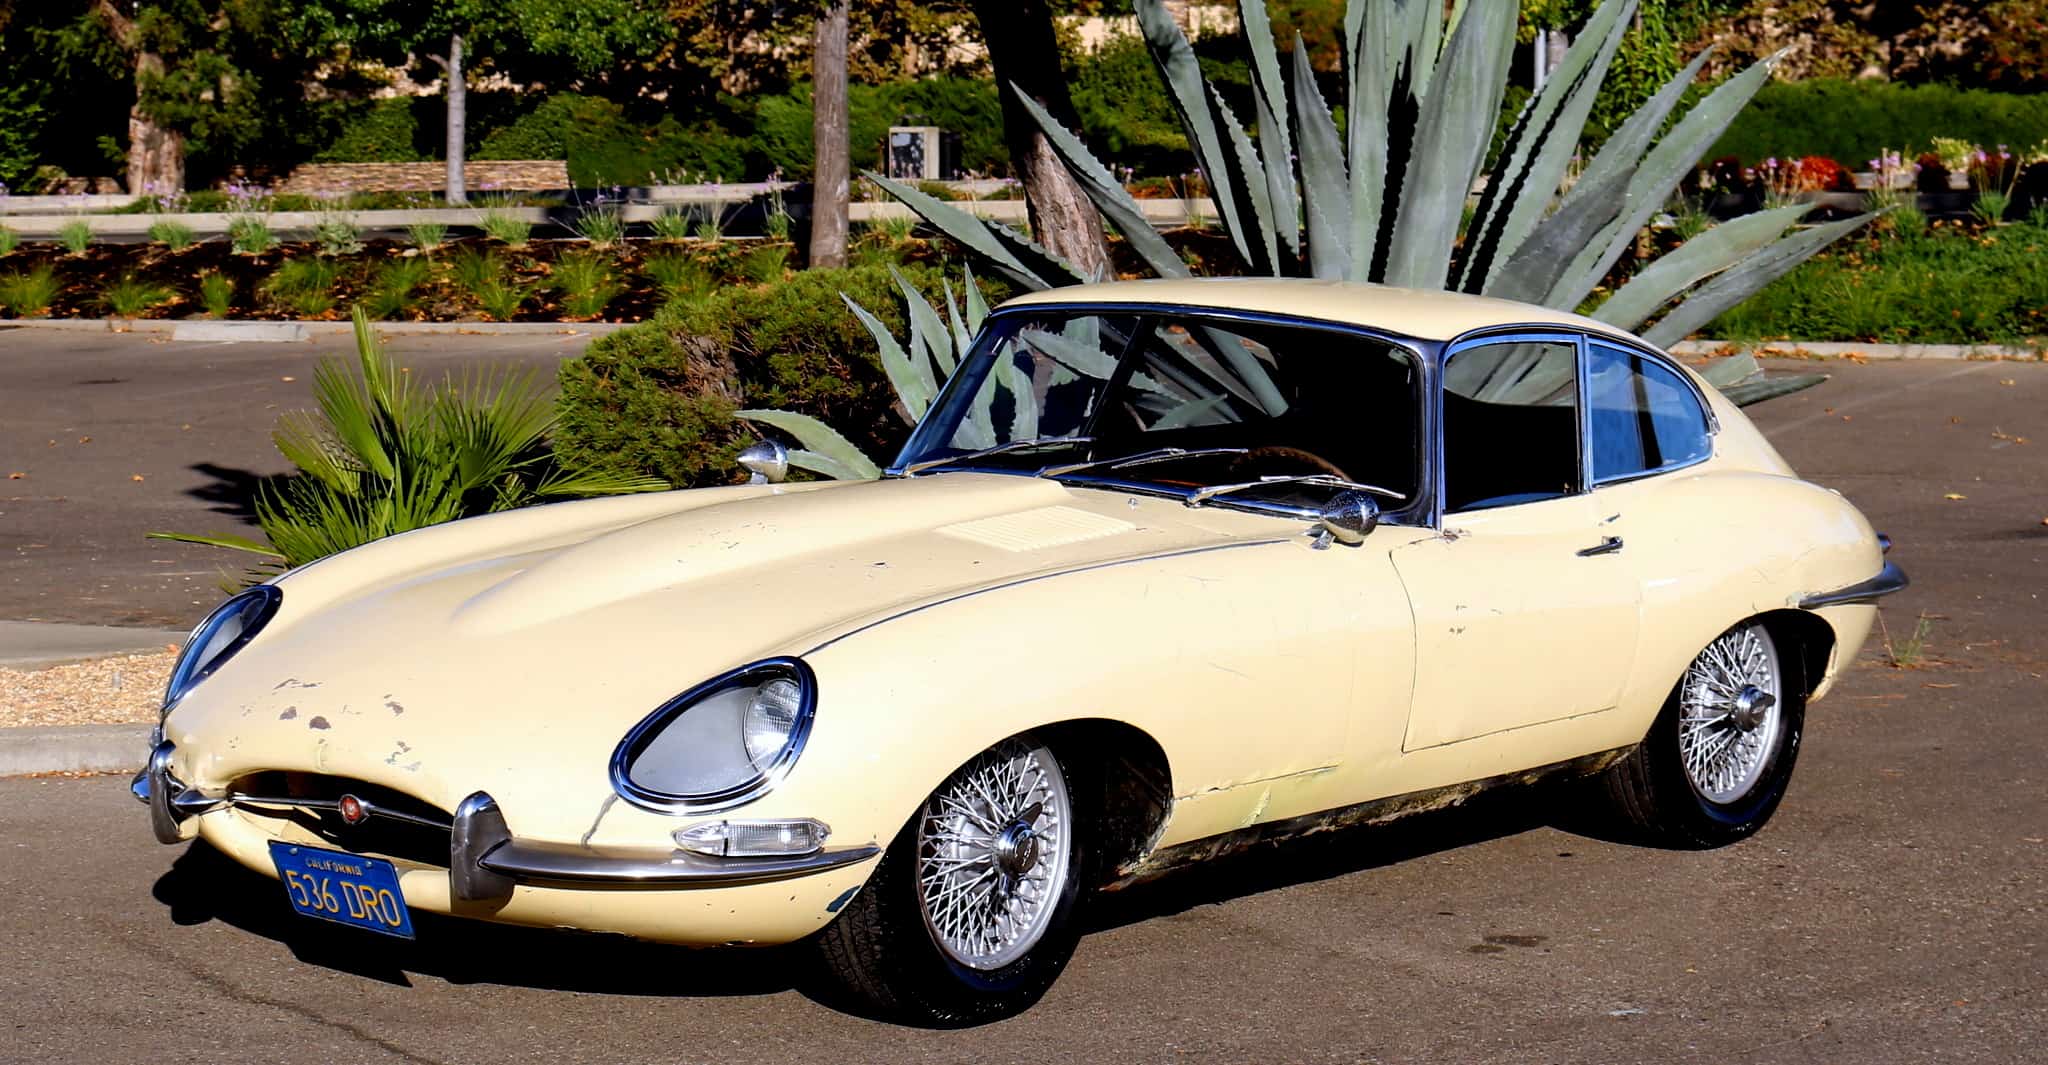 1963 Jaguar E-type Coupe | Dusty Cars